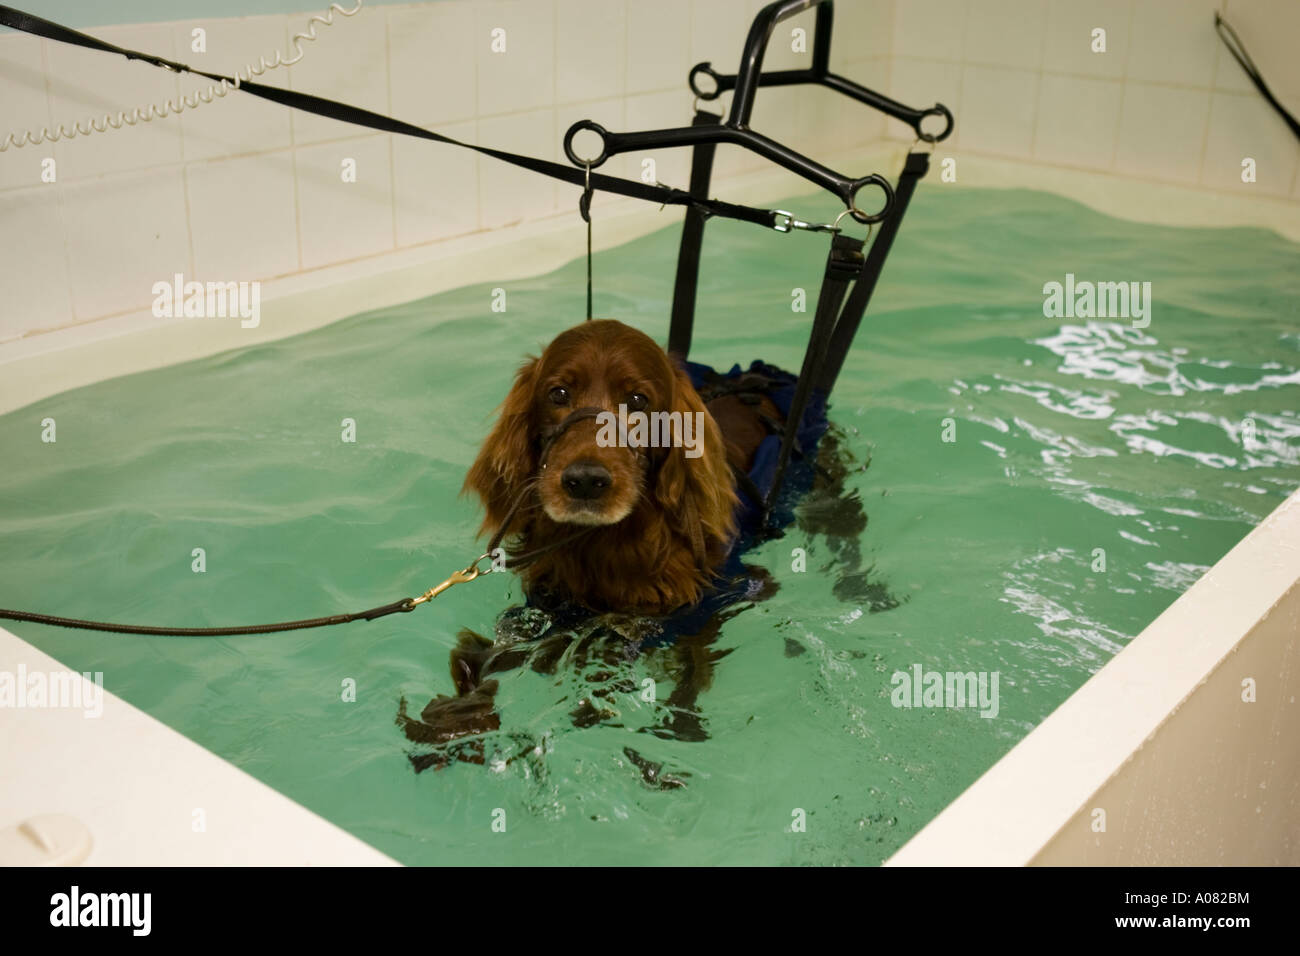 Hund im Kabelbaum mit Hydrotherapie-pool Stockfotografie - Alamy